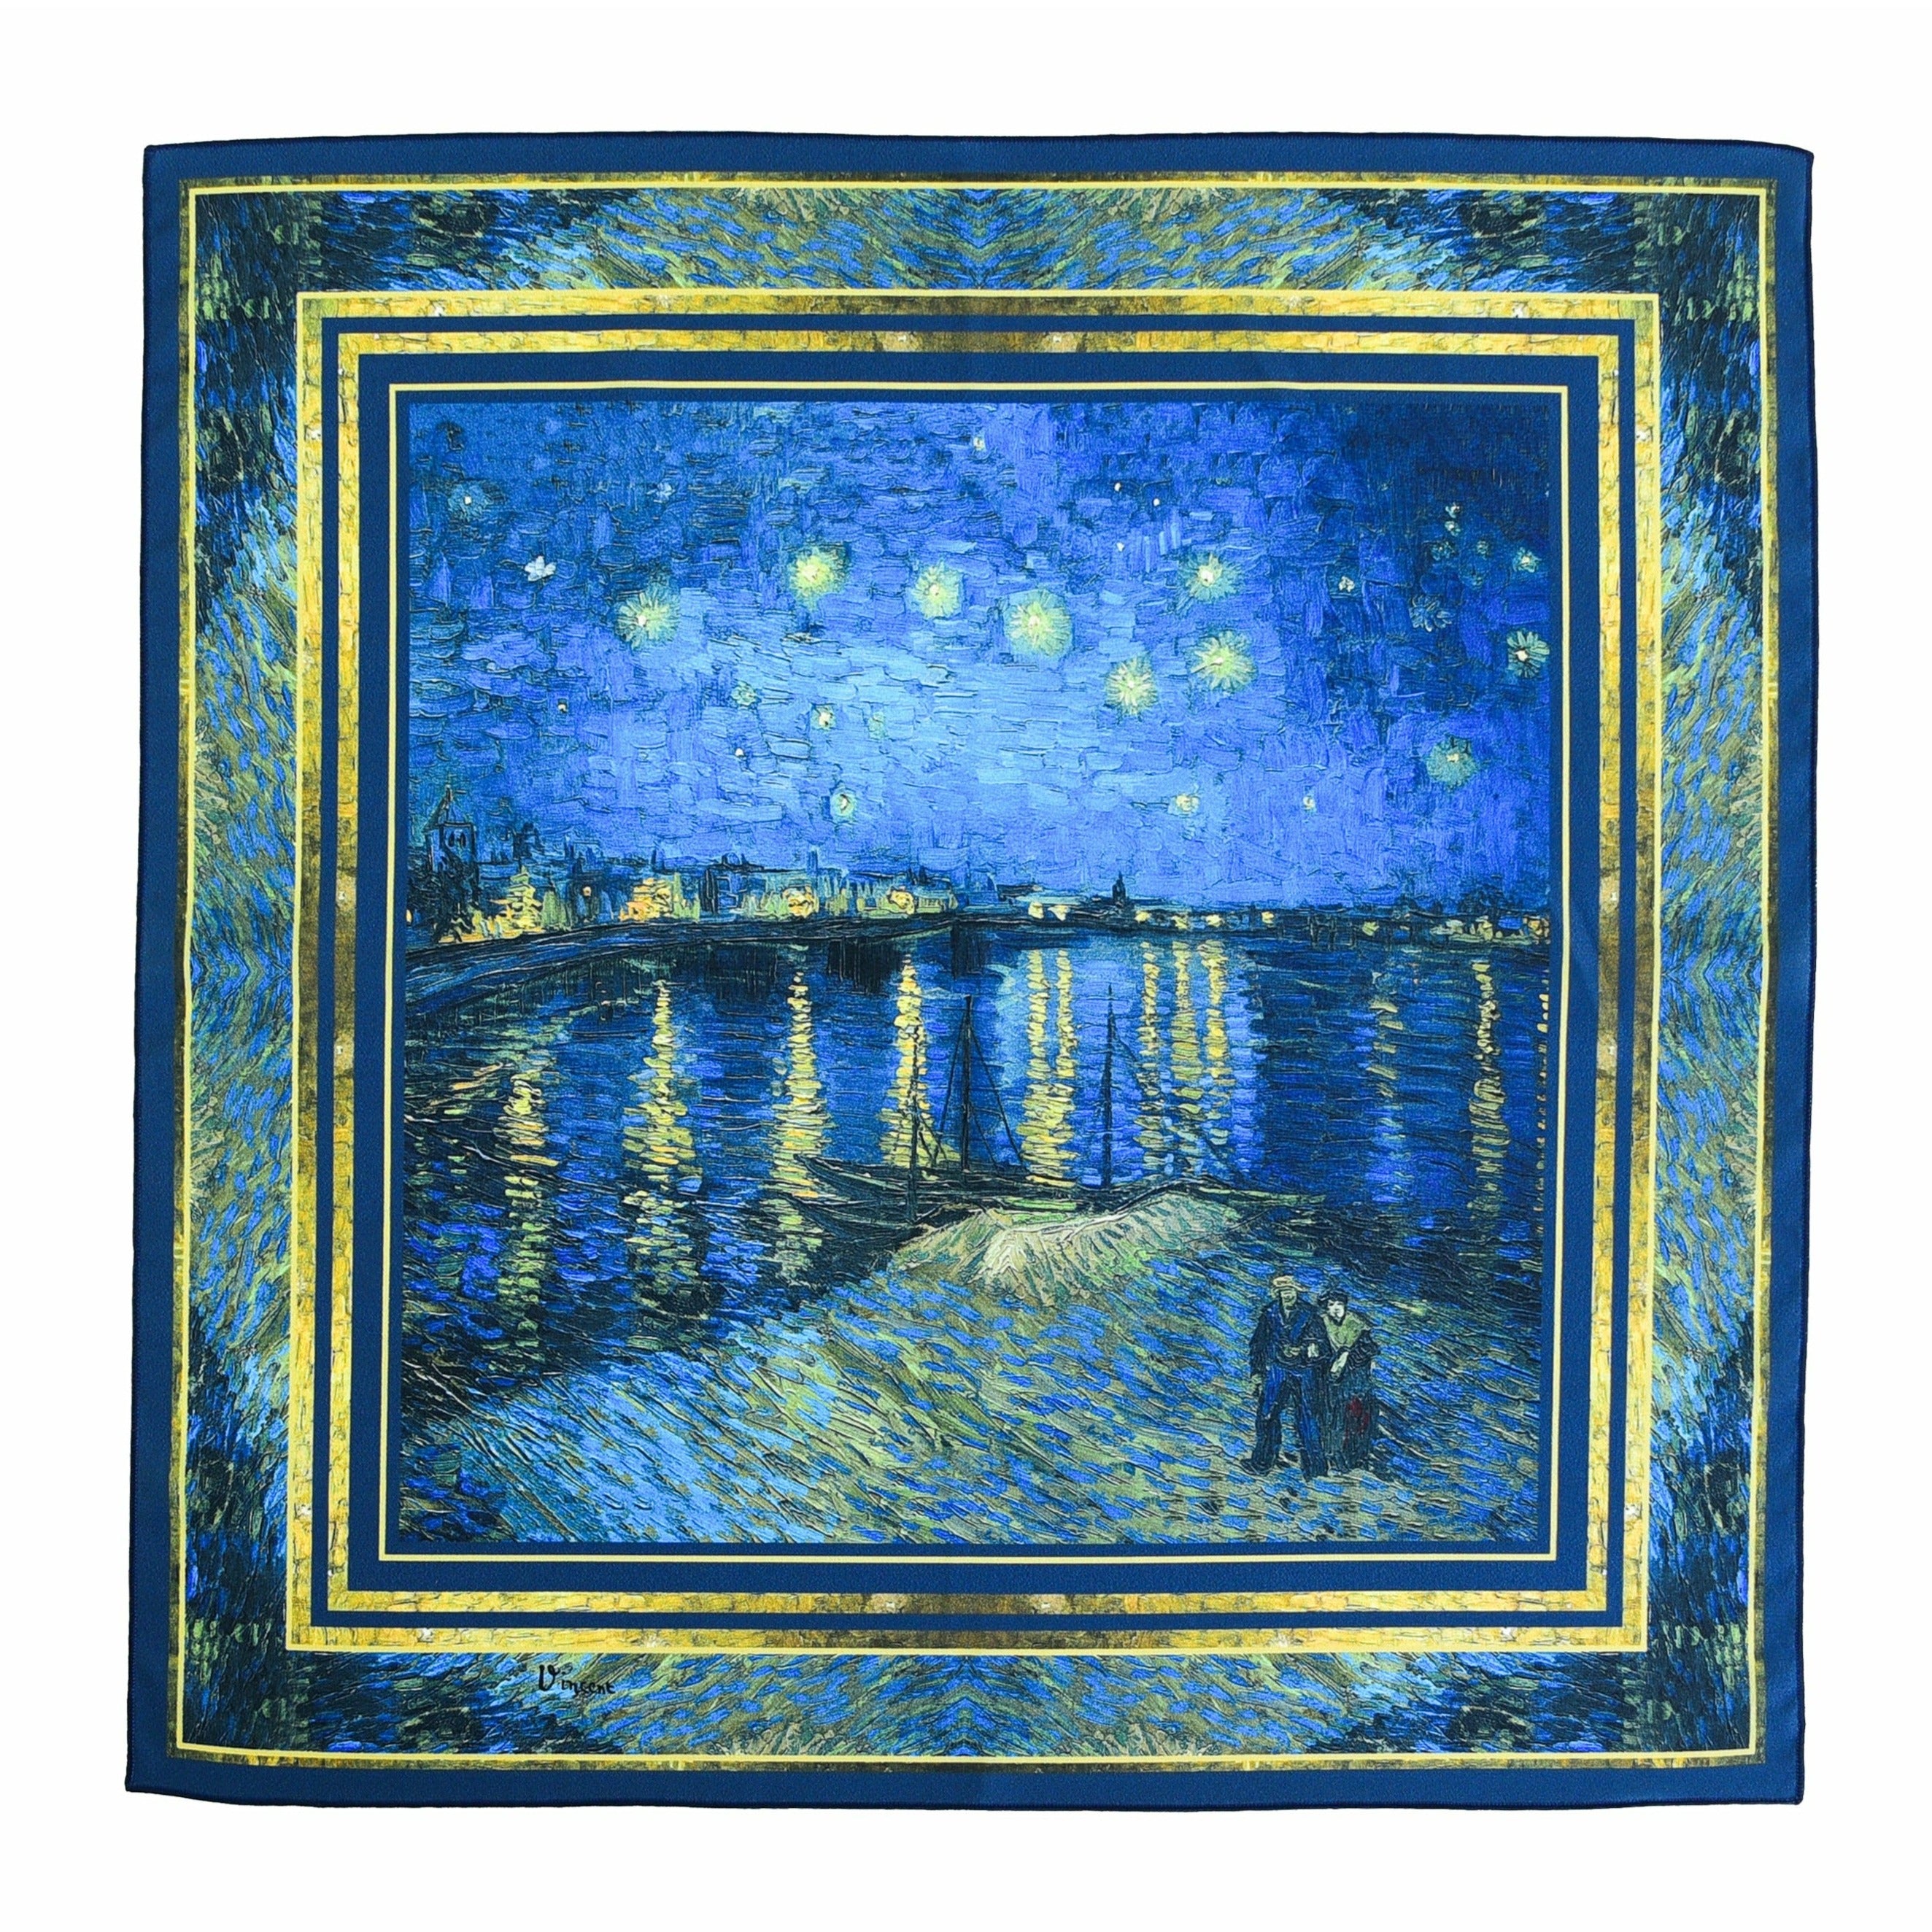 Skarelė Vincent van Gogh "Starry Night Over the Rhône"